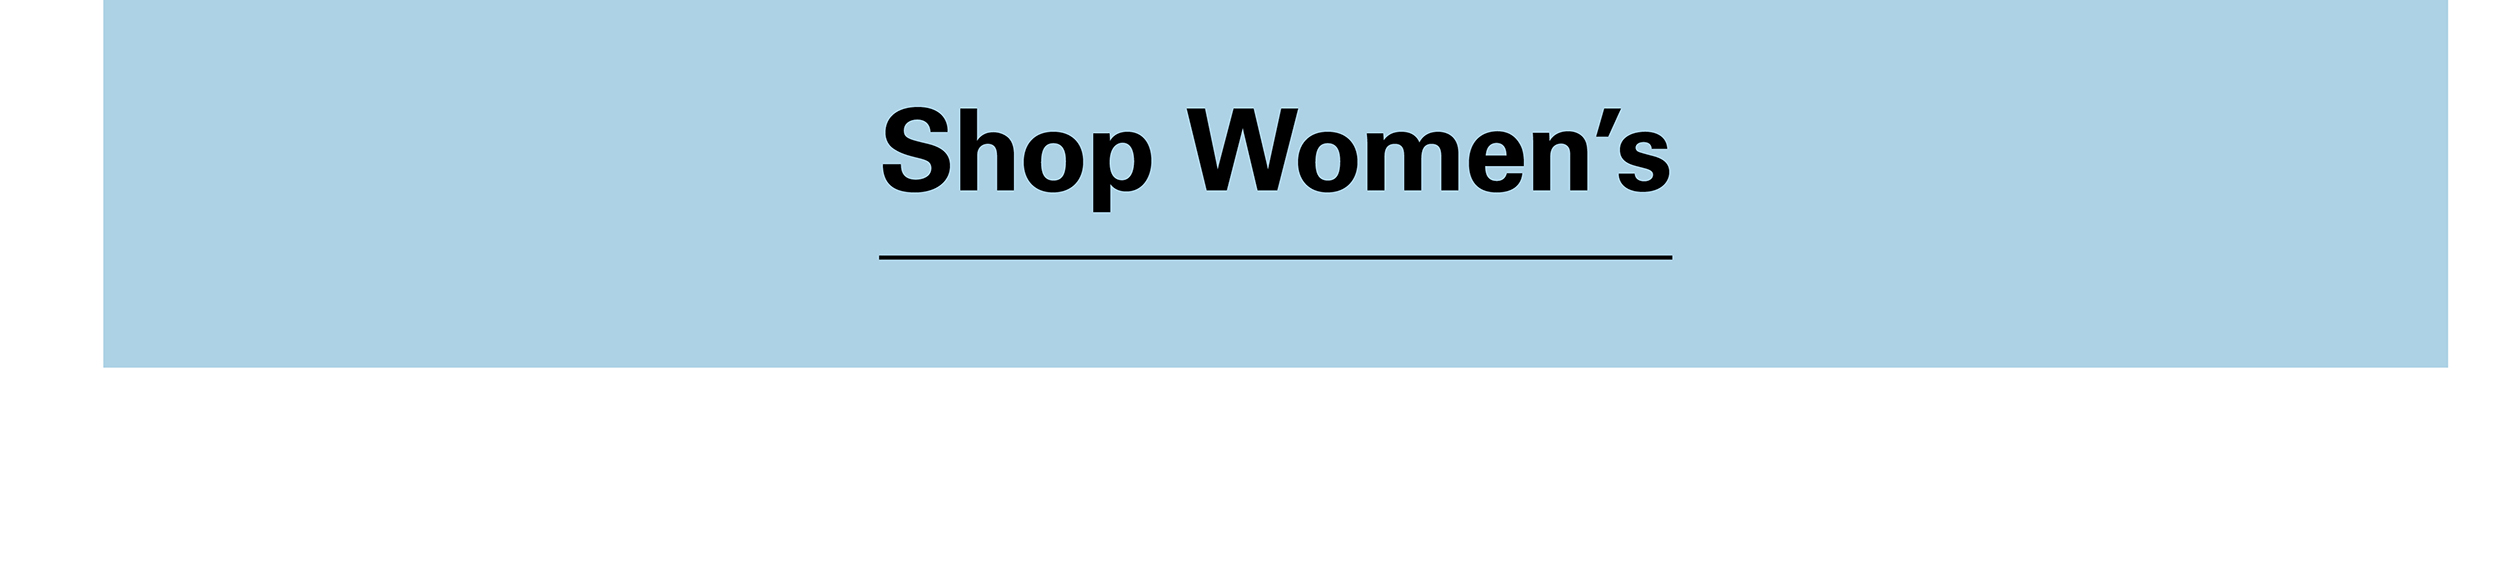 Shop Women's Sales